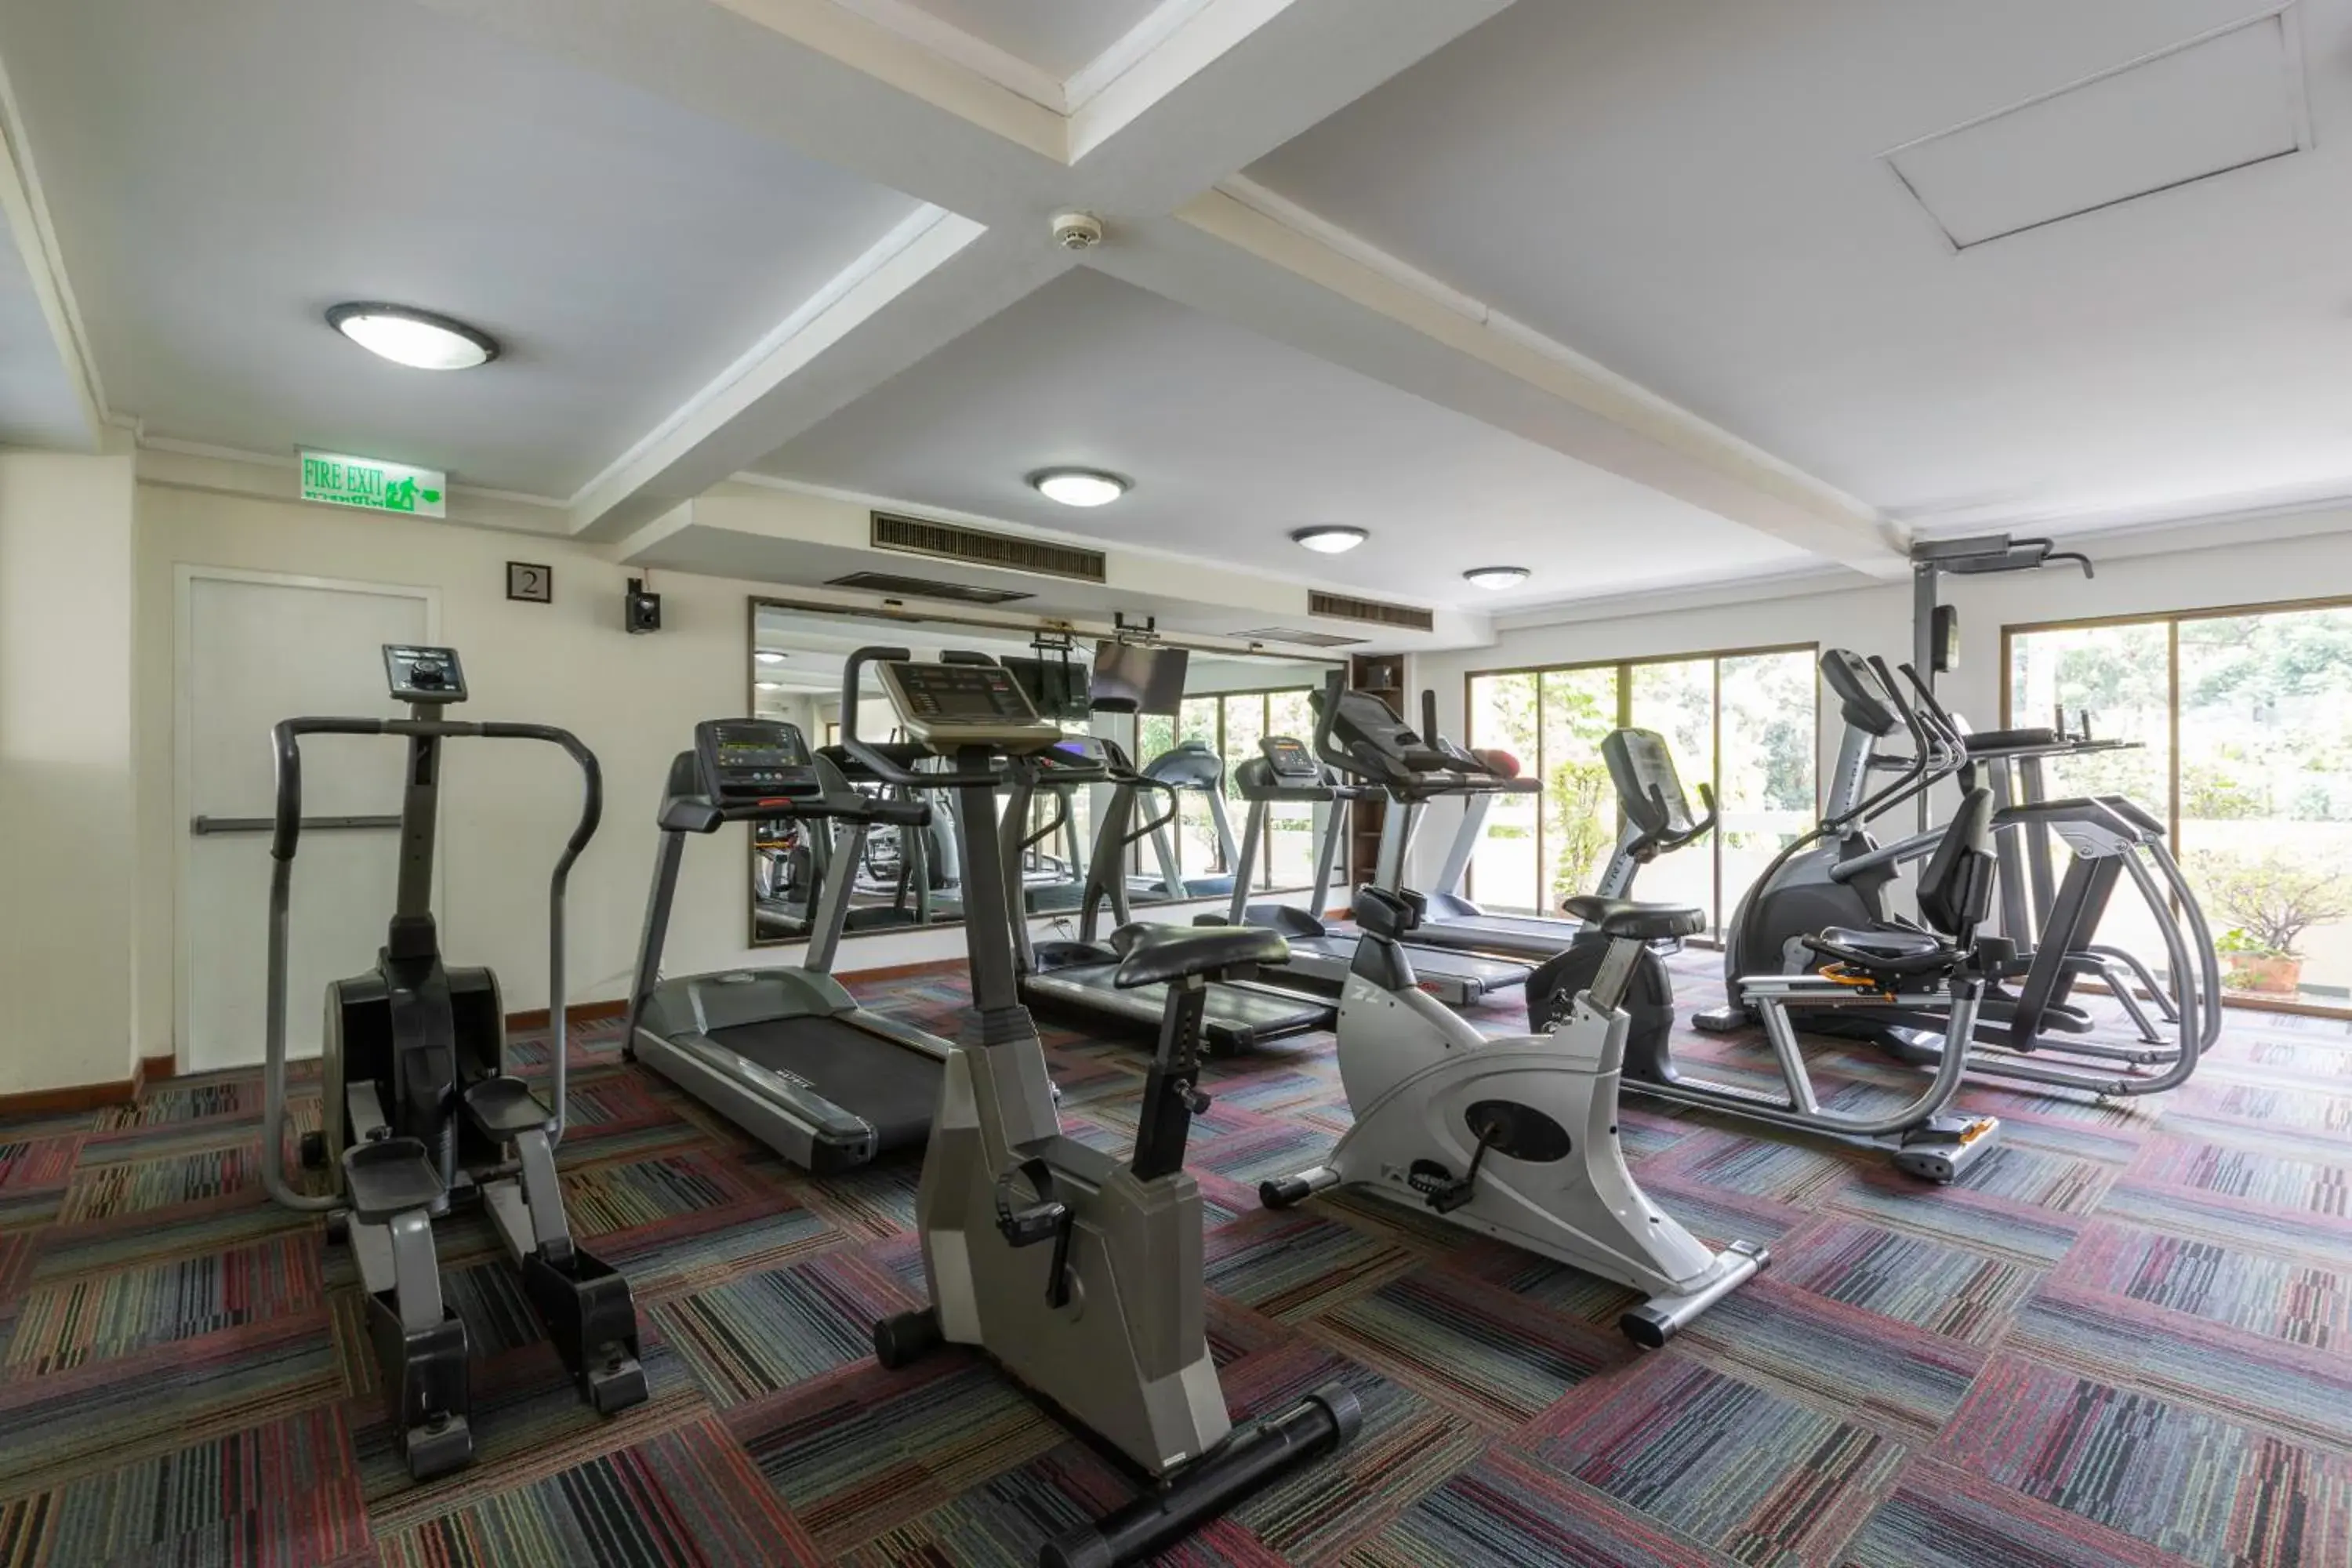 Fitness centre/facilities, Fitness Center/Facilities in Kantary House Ramkamhaeng Hotel